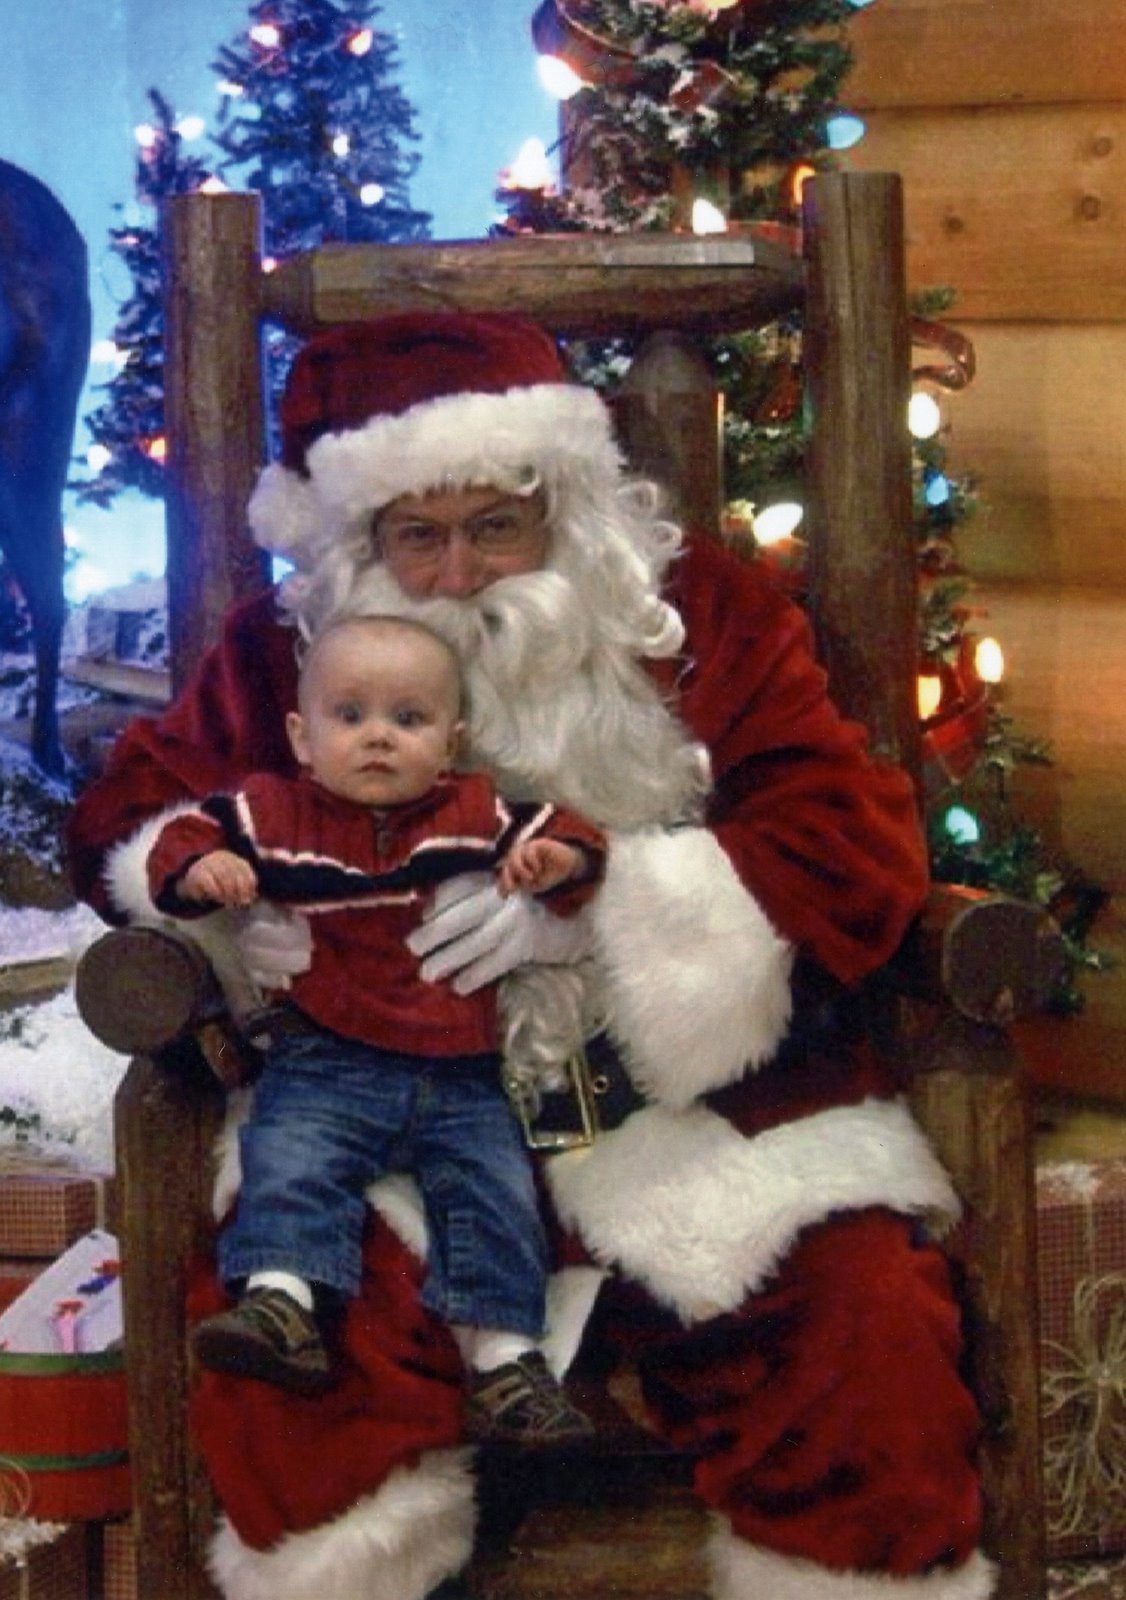 [Ethan+&+Santa+2008.jpg]